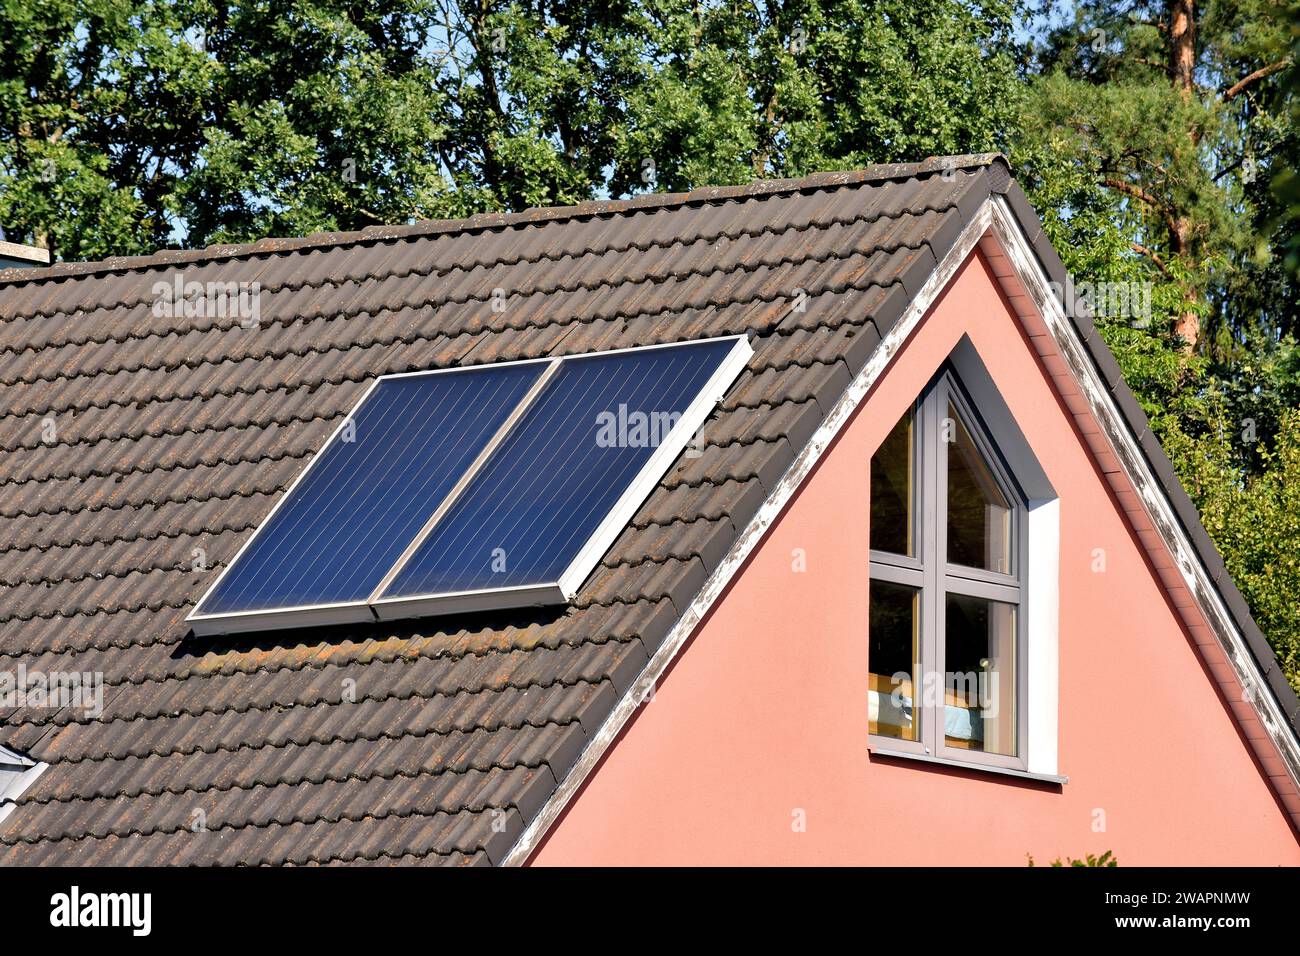 Collettori termici solari sul tetto della casa per una produzione ecologica di riscaldamento e acqua calda per uso domestico Foto Stock